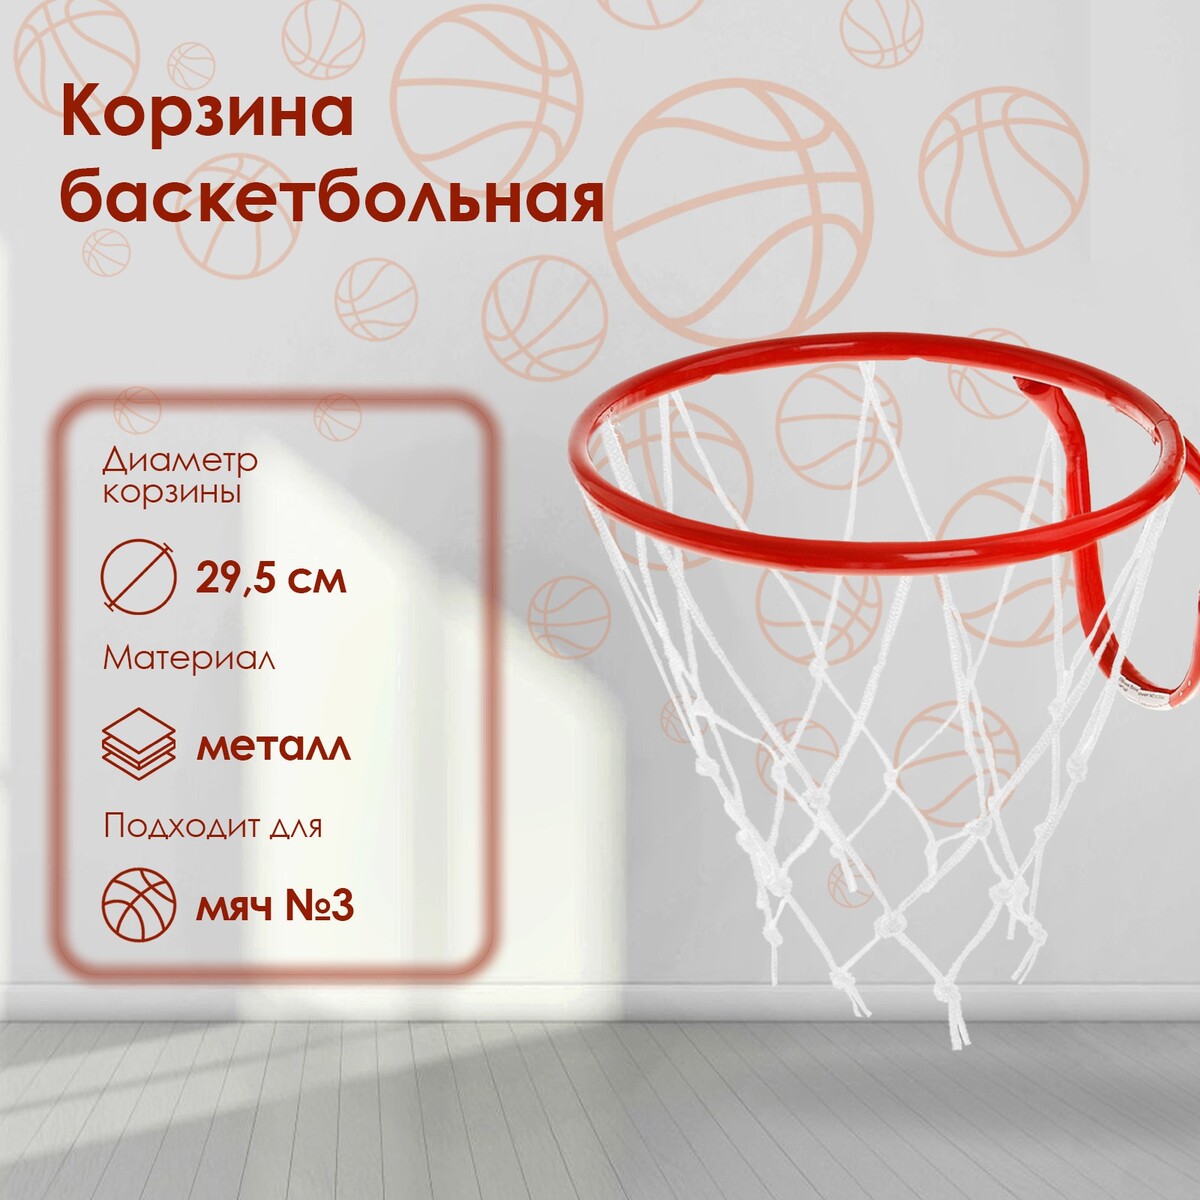 Корзина баскетбольная №3, d=295 мм, с сеткой кольцо баскетбольное 3 с сеткой